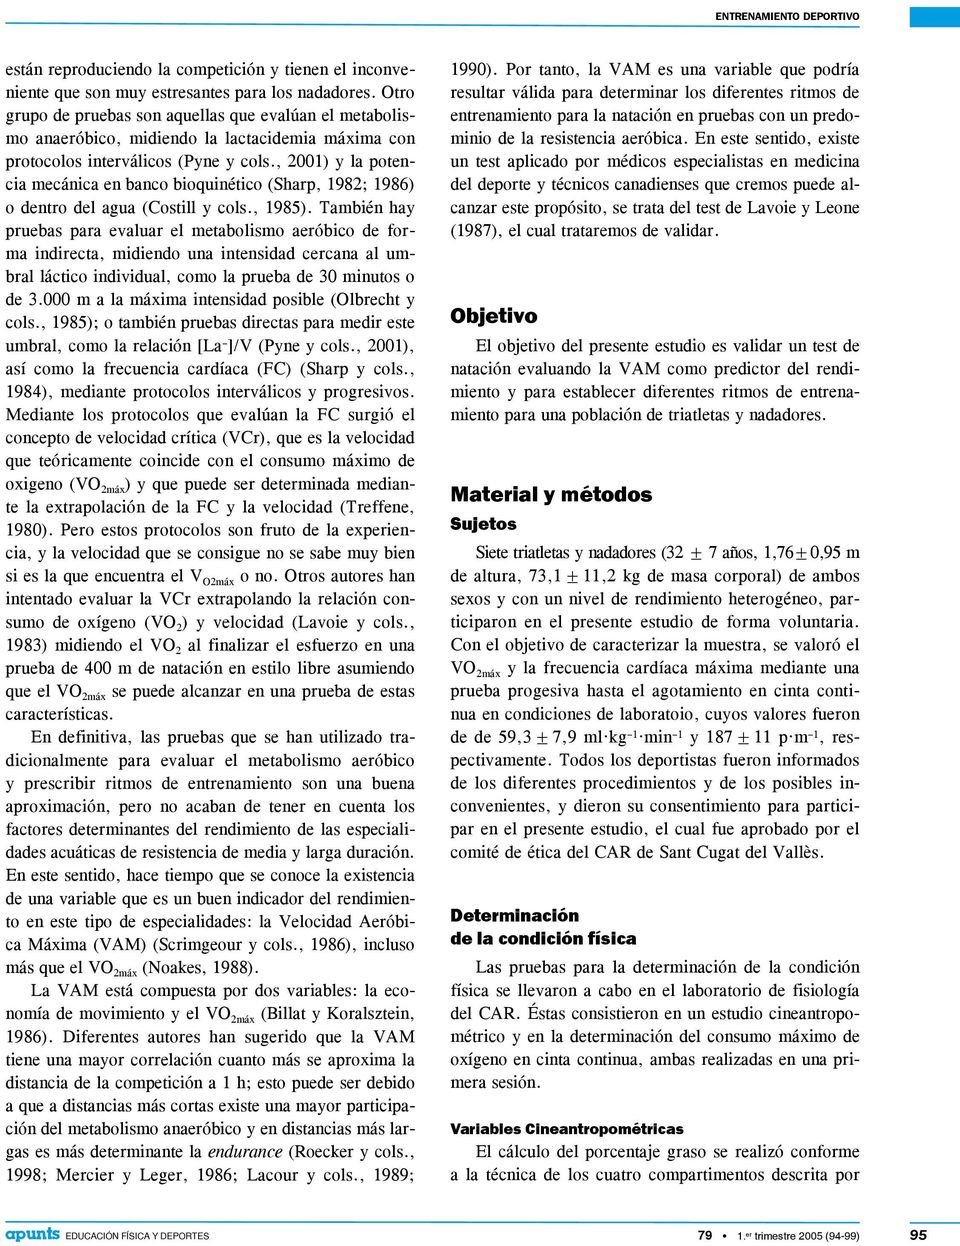 , 2001) y la potencia mecánica en banco bioquinético (Sharp, 1982; 1986) o dentro del agua (Costill y cols., 1985).